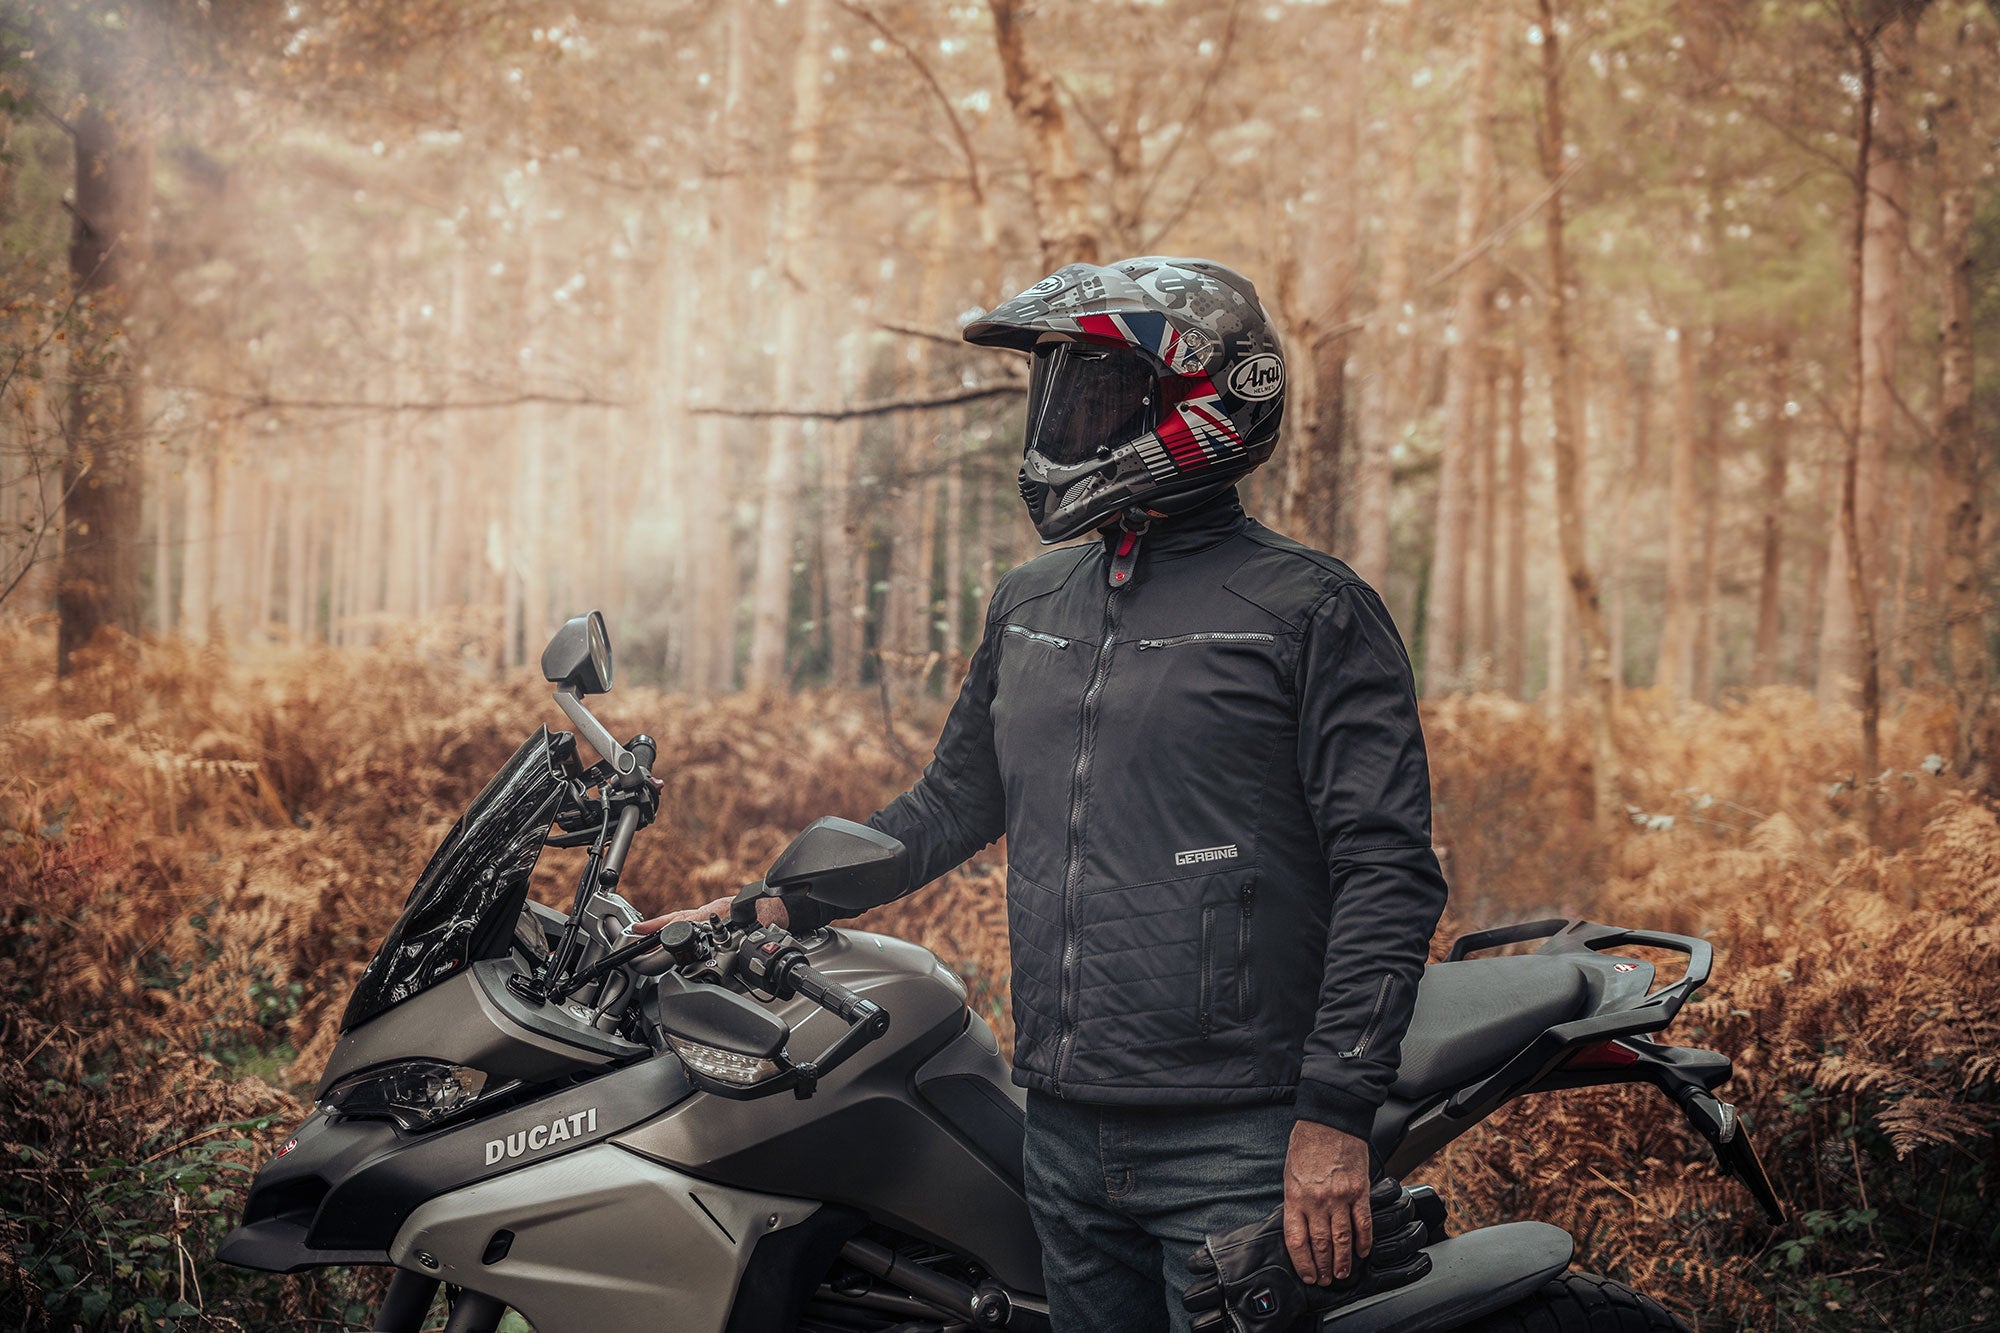 Gerbing Heated Motorcycle Jackets & Gerbing Heated Motorcycle Trousers - Gerbing Heated Motorcycle Clothing